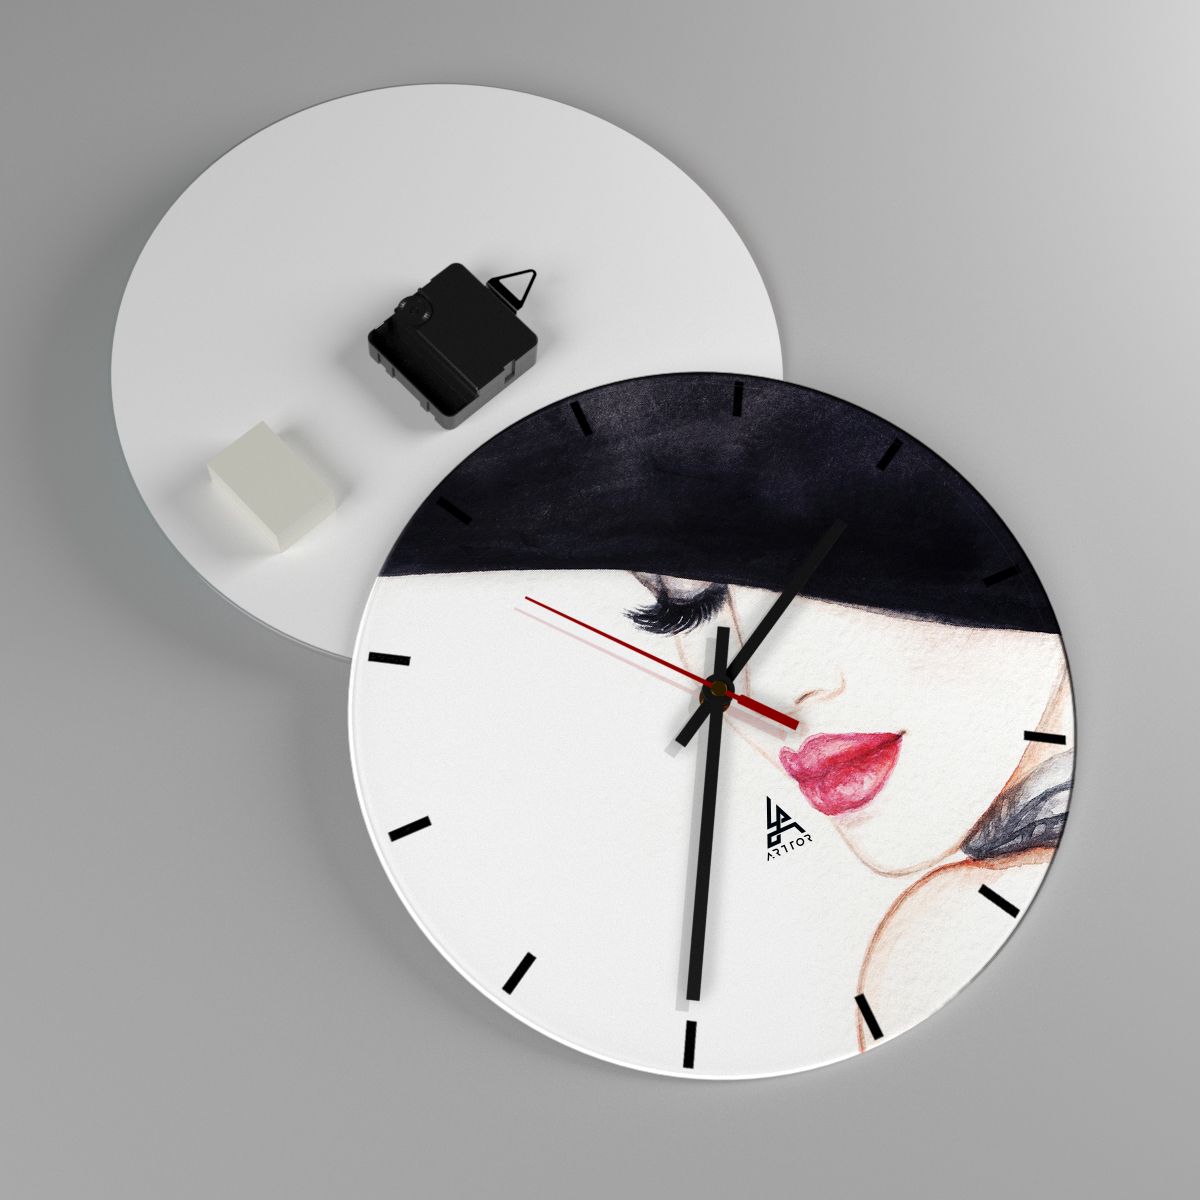 Reloj de pared Mujer, Reloj de pared Labios Rojos, Reloj de pared Sombrero Negro, Reloj de pared Arte, Reloj de pared Cara Misteriosa